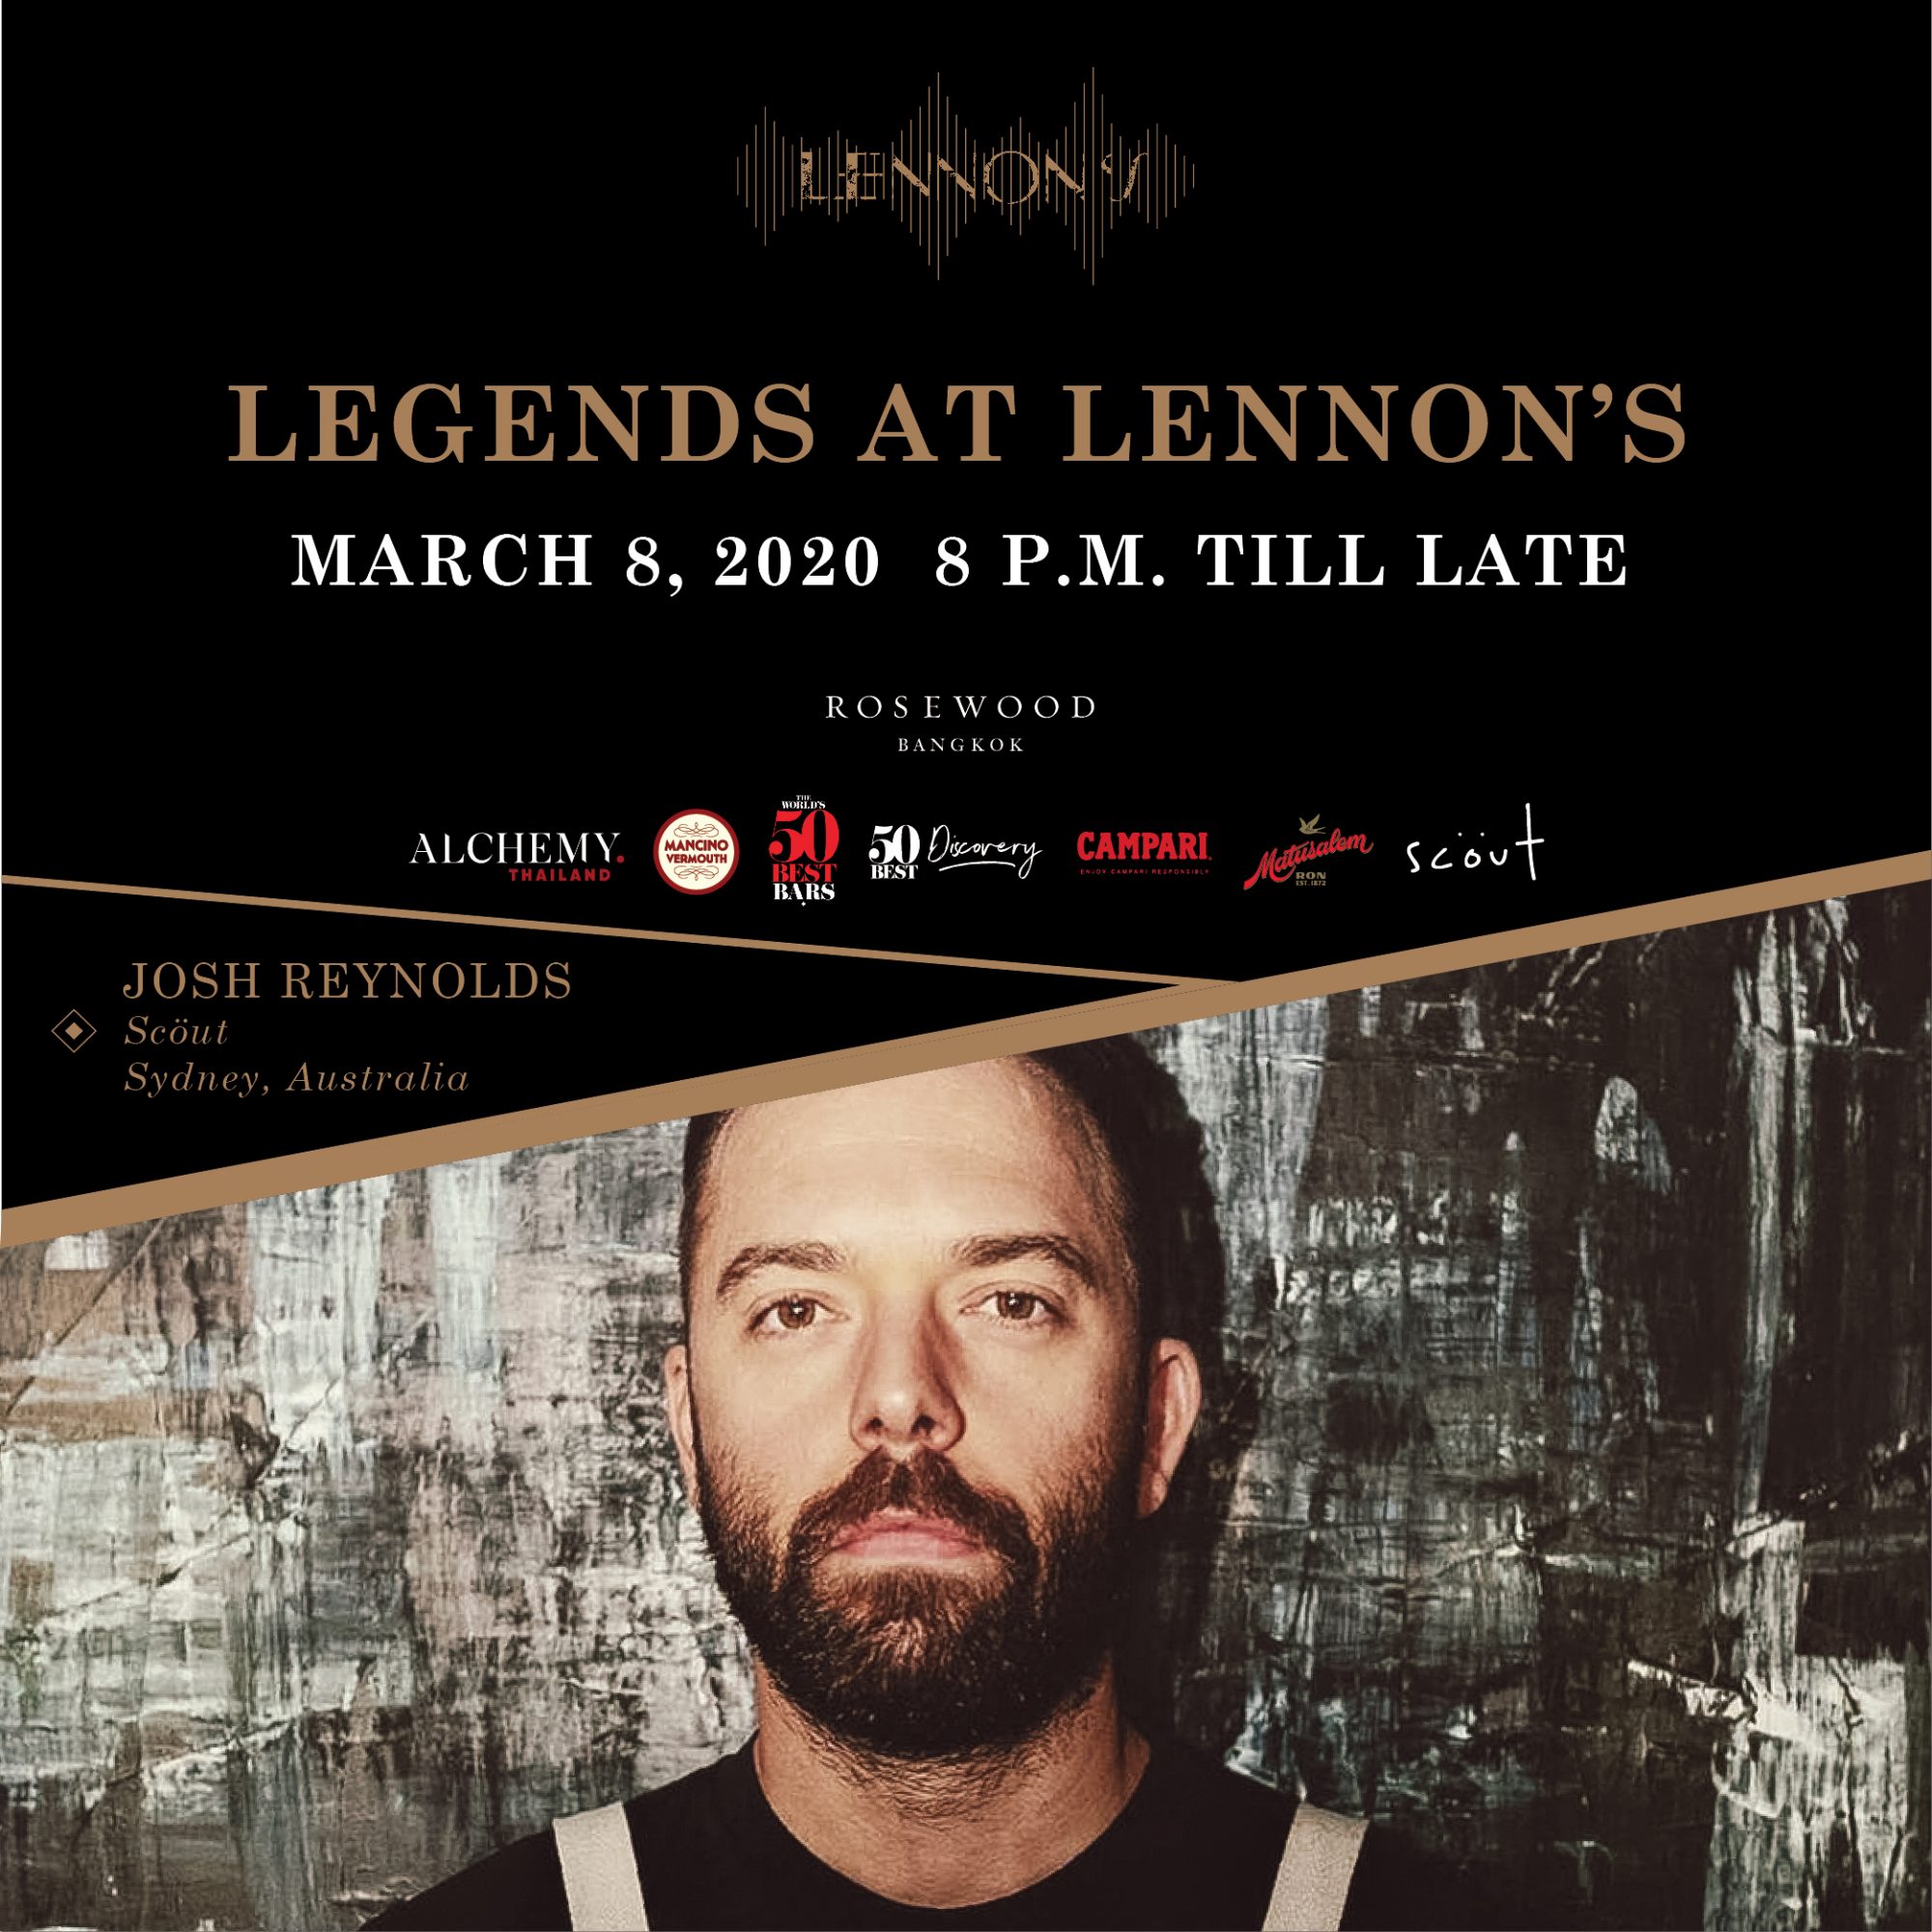 โรสวูด กรุงเทพฯ เปิดตัว “Legends at Lennon’s” ณ เลนนอนส์ 3